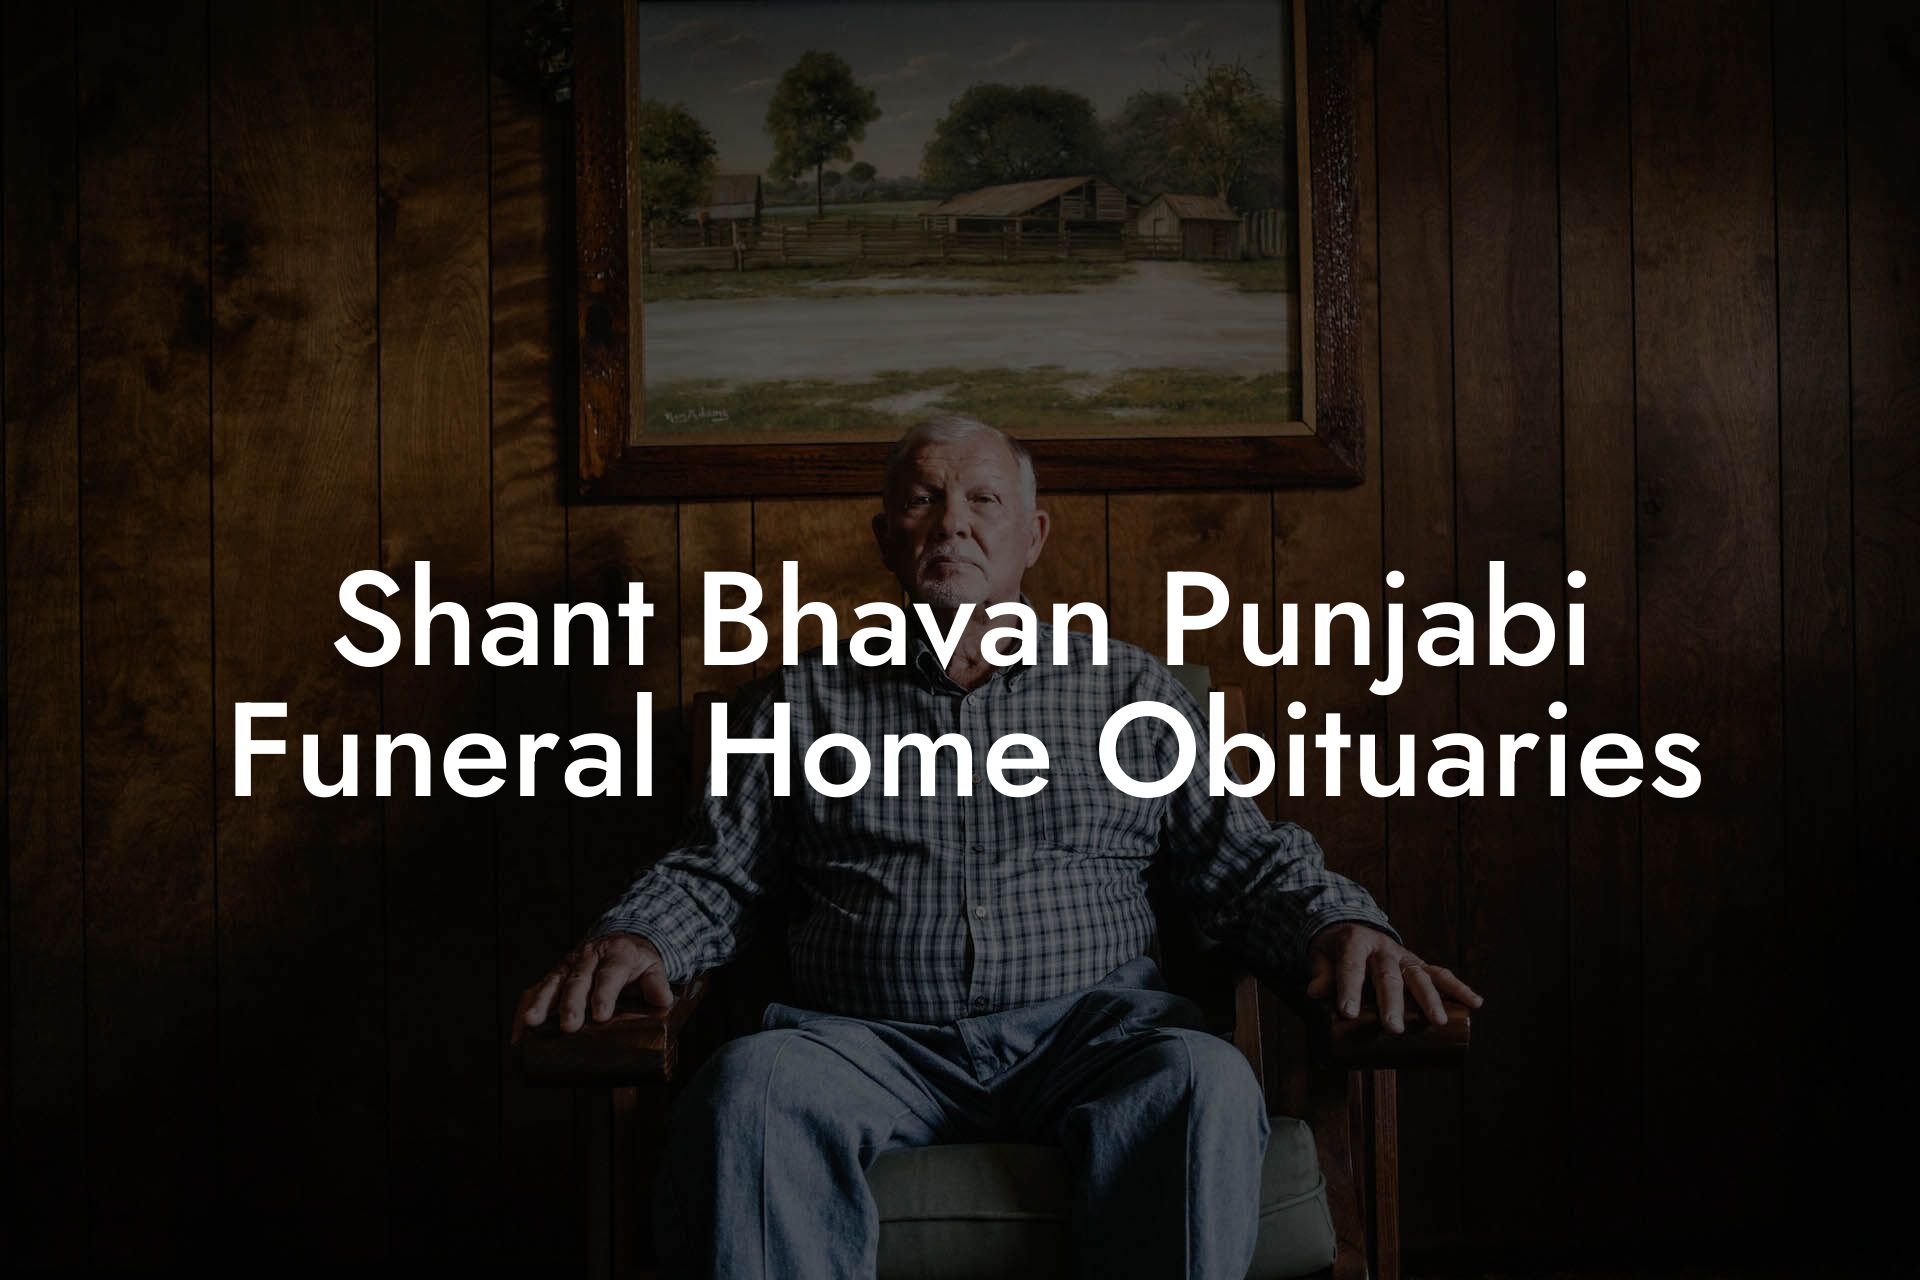 Shant Bhavan Punjabi Funeral Home Obituaries